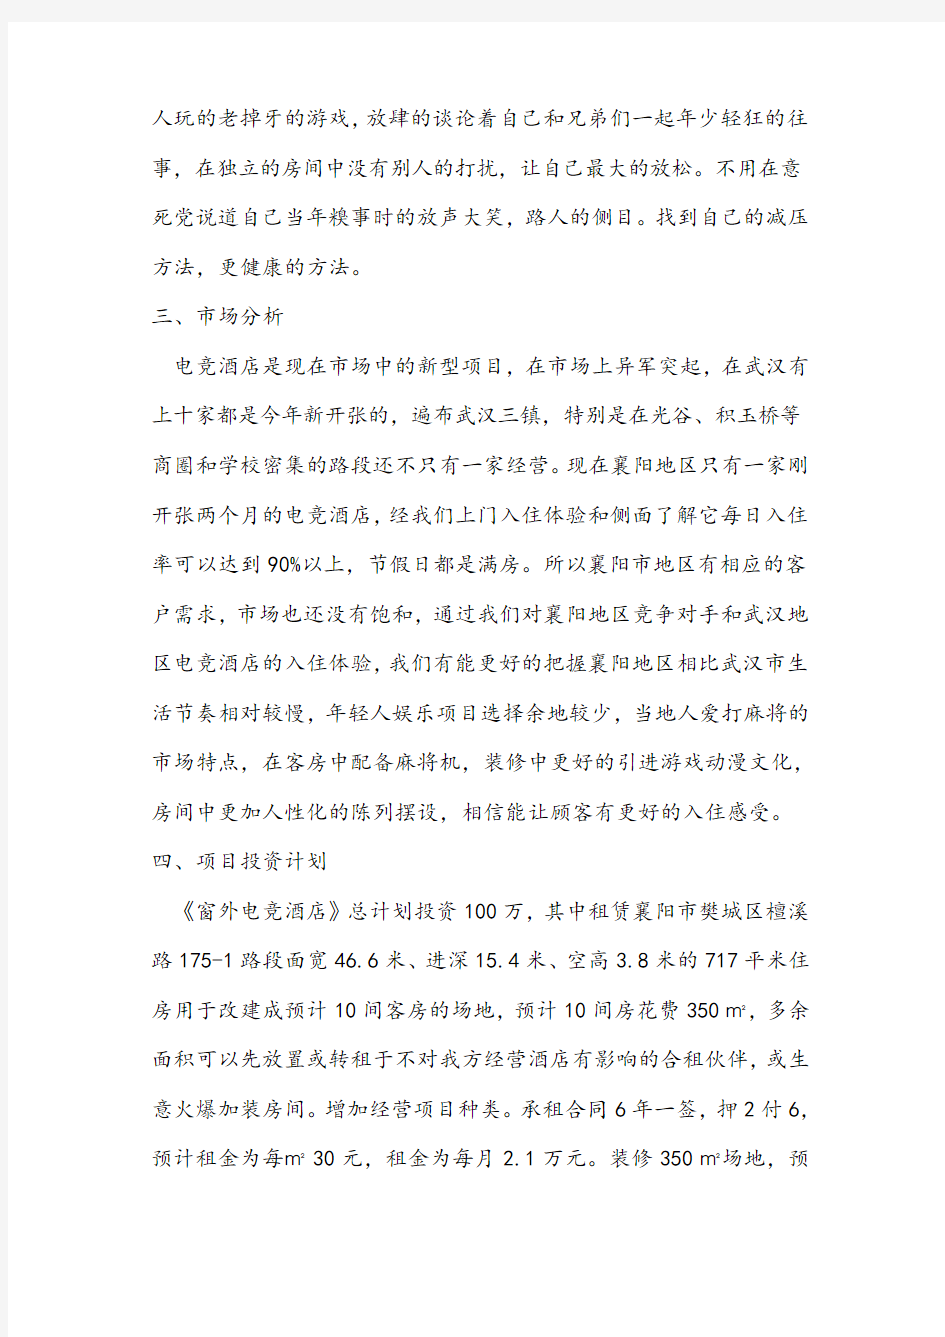 襄樊(理想国)电竞酒店创业计划书